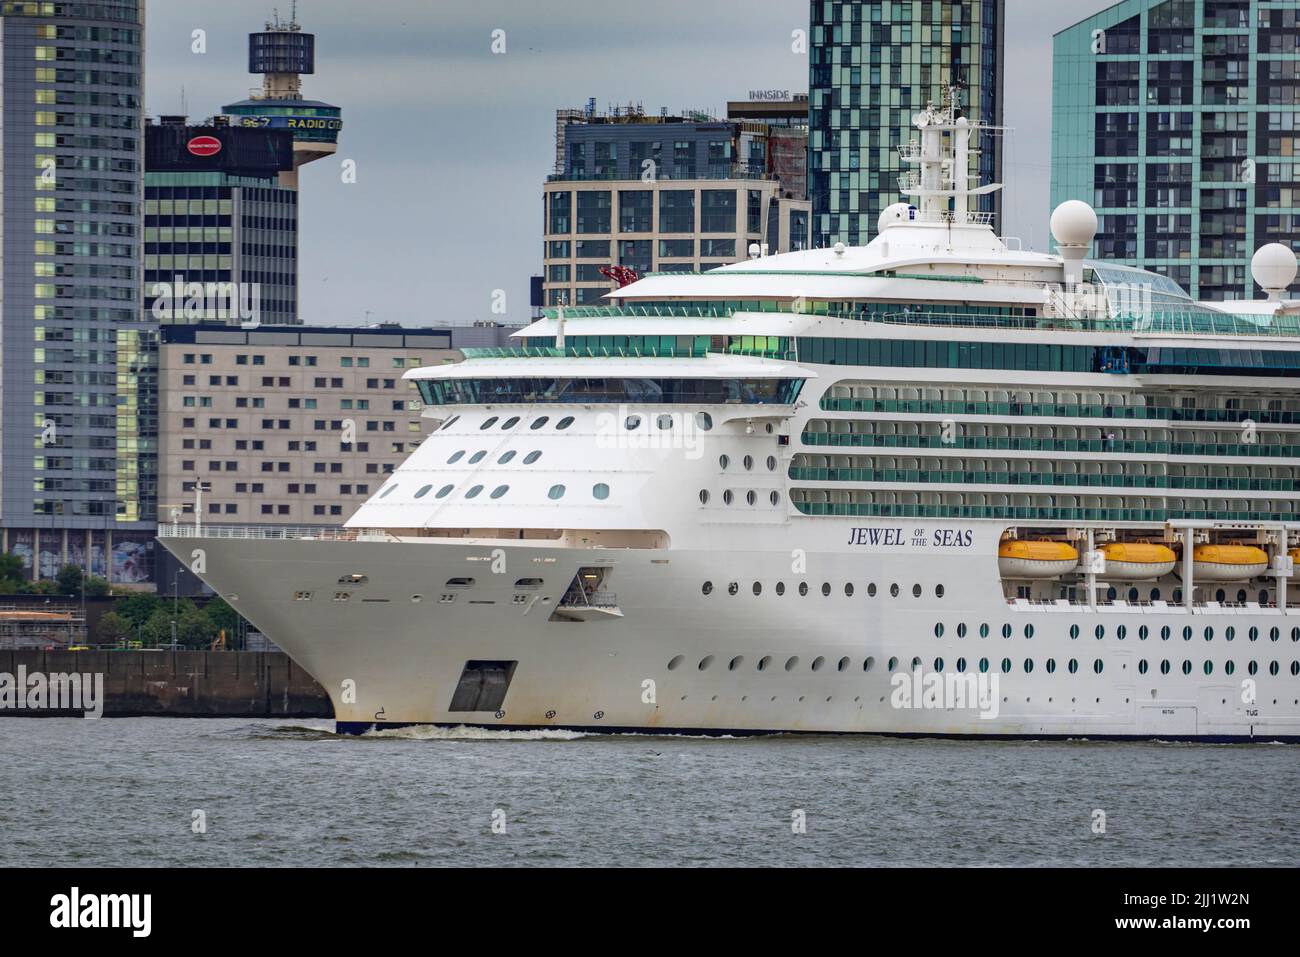 Joyau de la mer iThe Radiance bateau de croisière exploité par Royal Caribbean vu à Liverpool pierhead sur la rivière Mersey. Banque D'Images